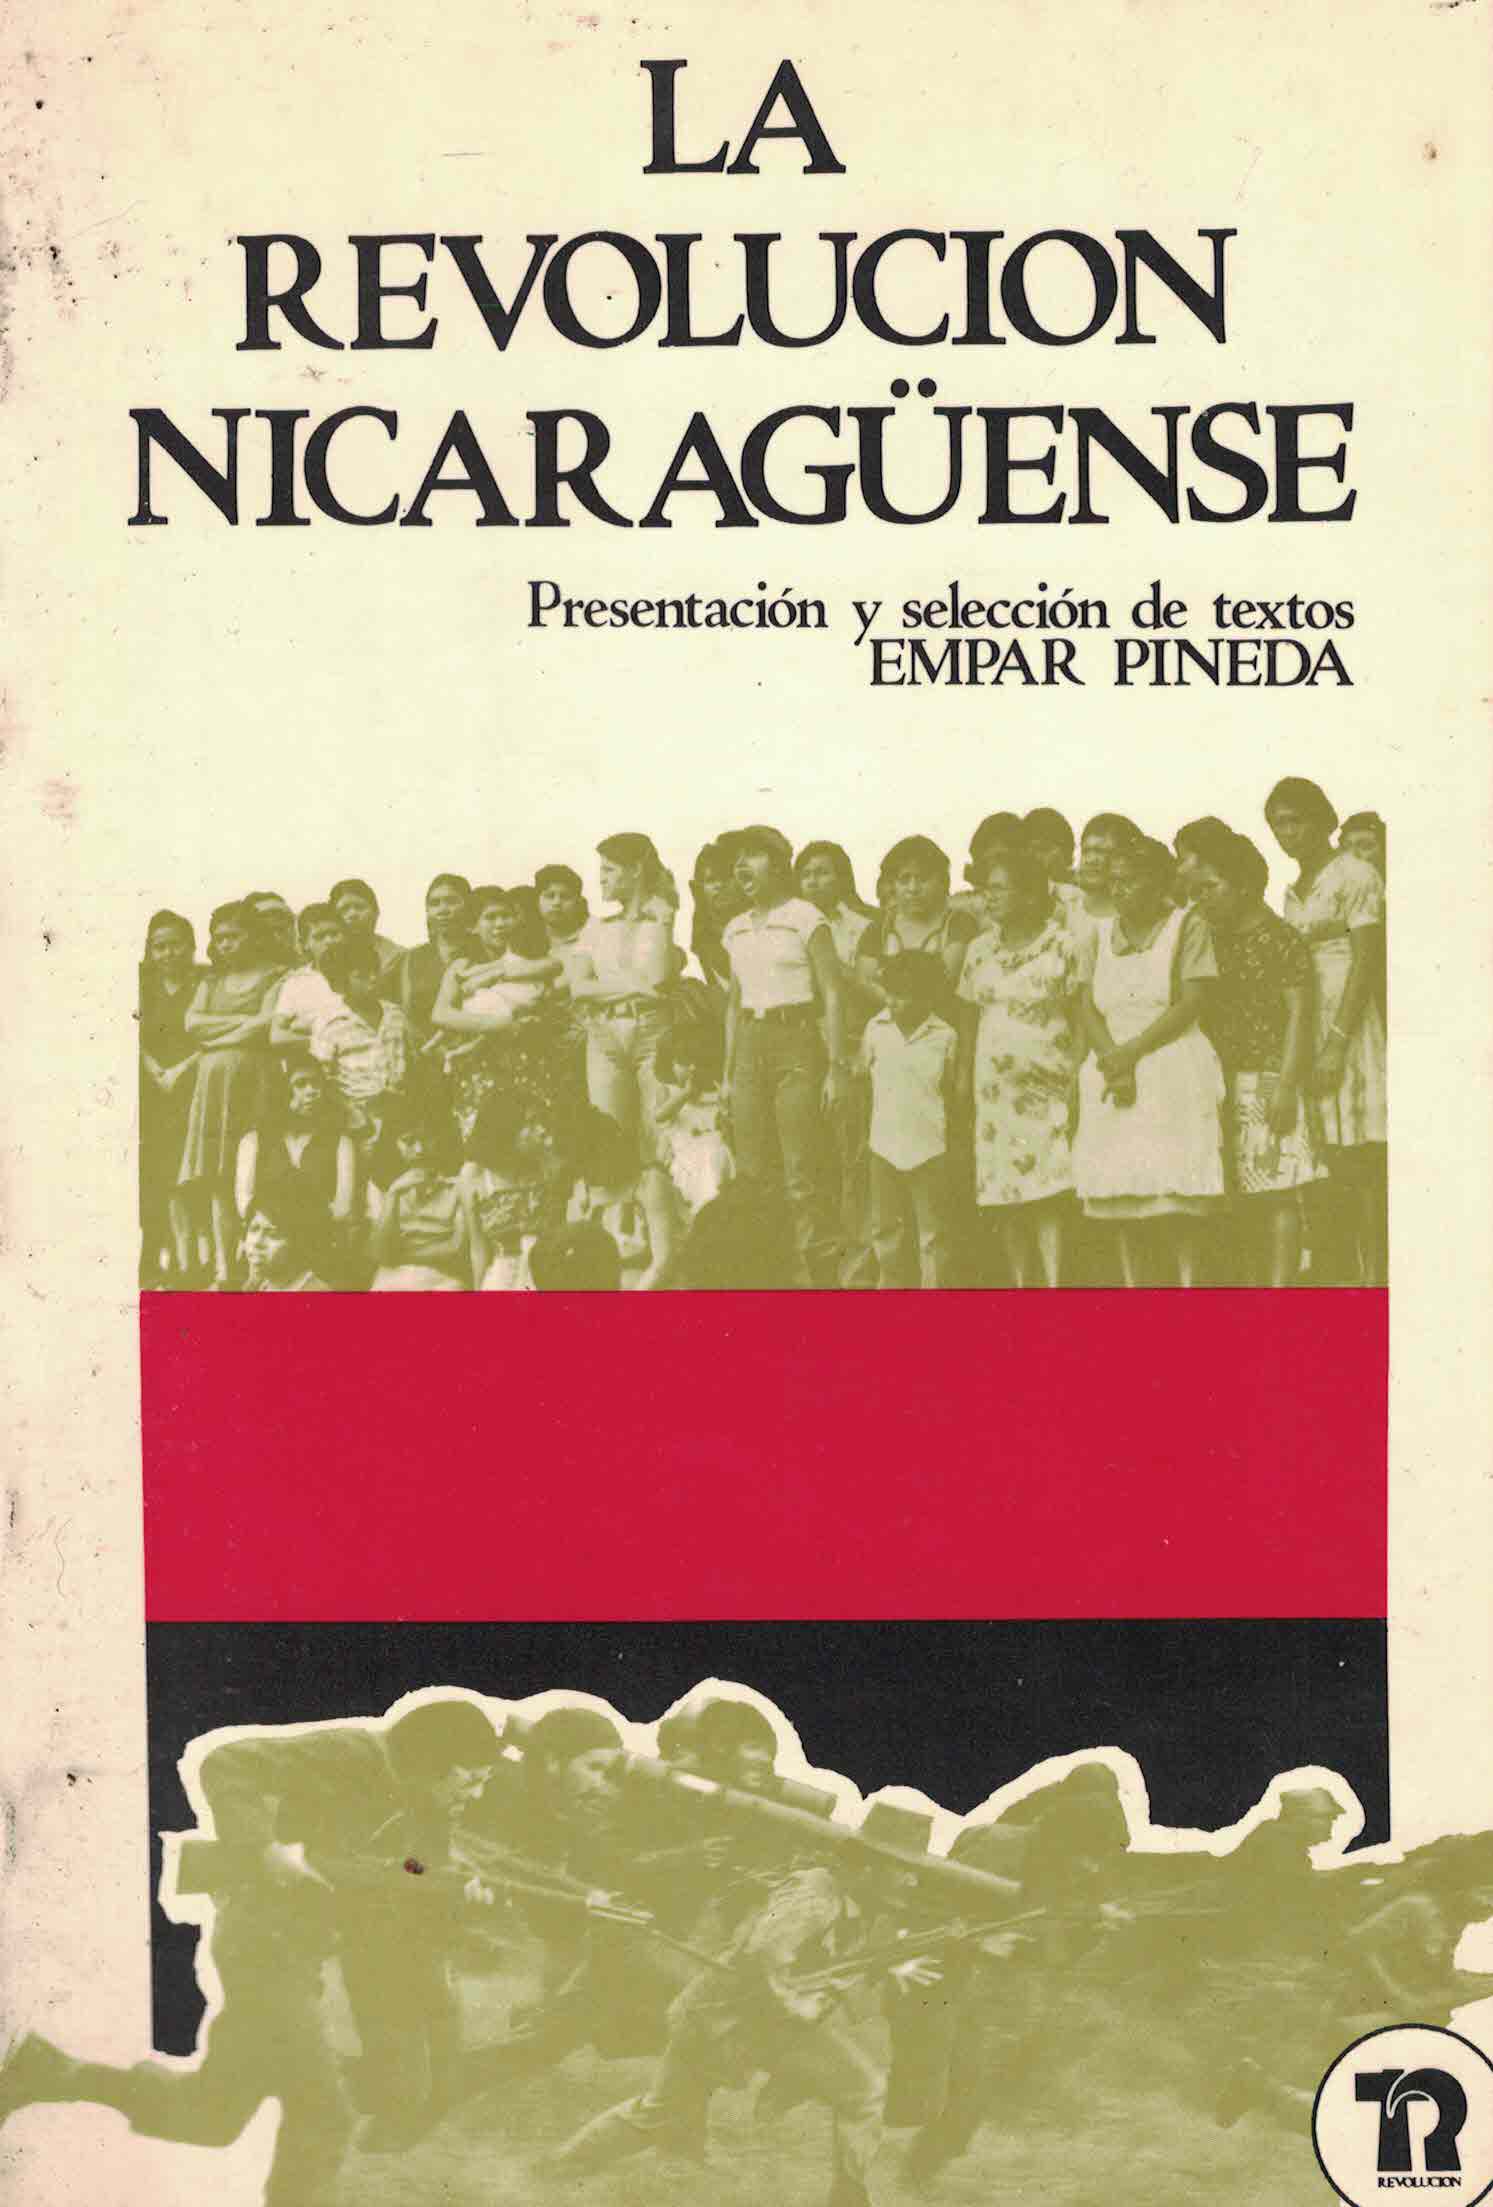 La revolución nicaragüense